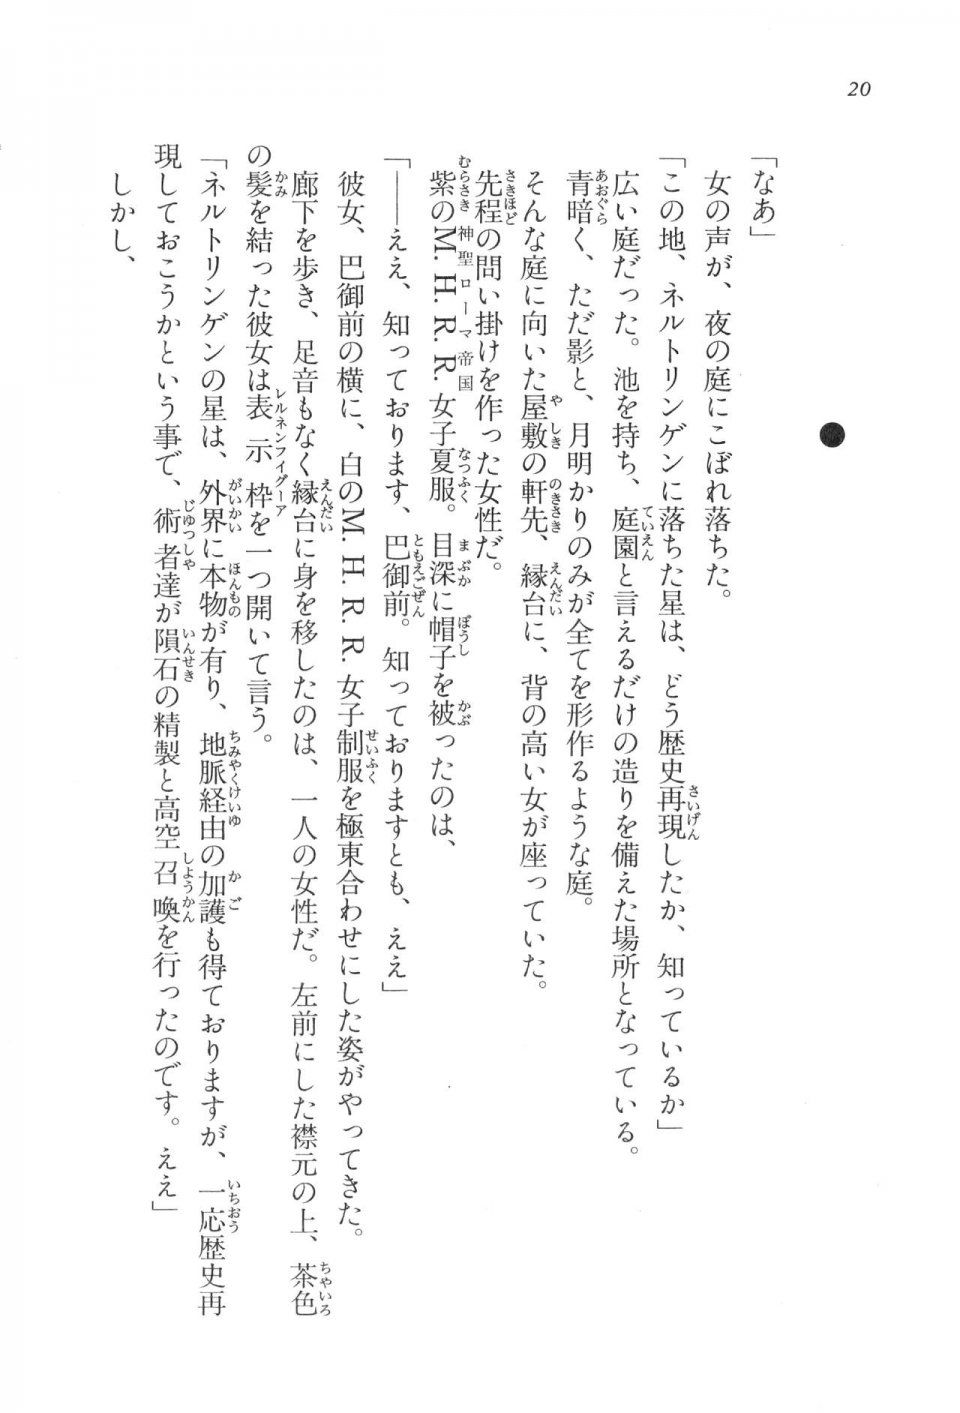 Kyoukai Senjou no Horizon LN Vol 17(7B) - Photo #20